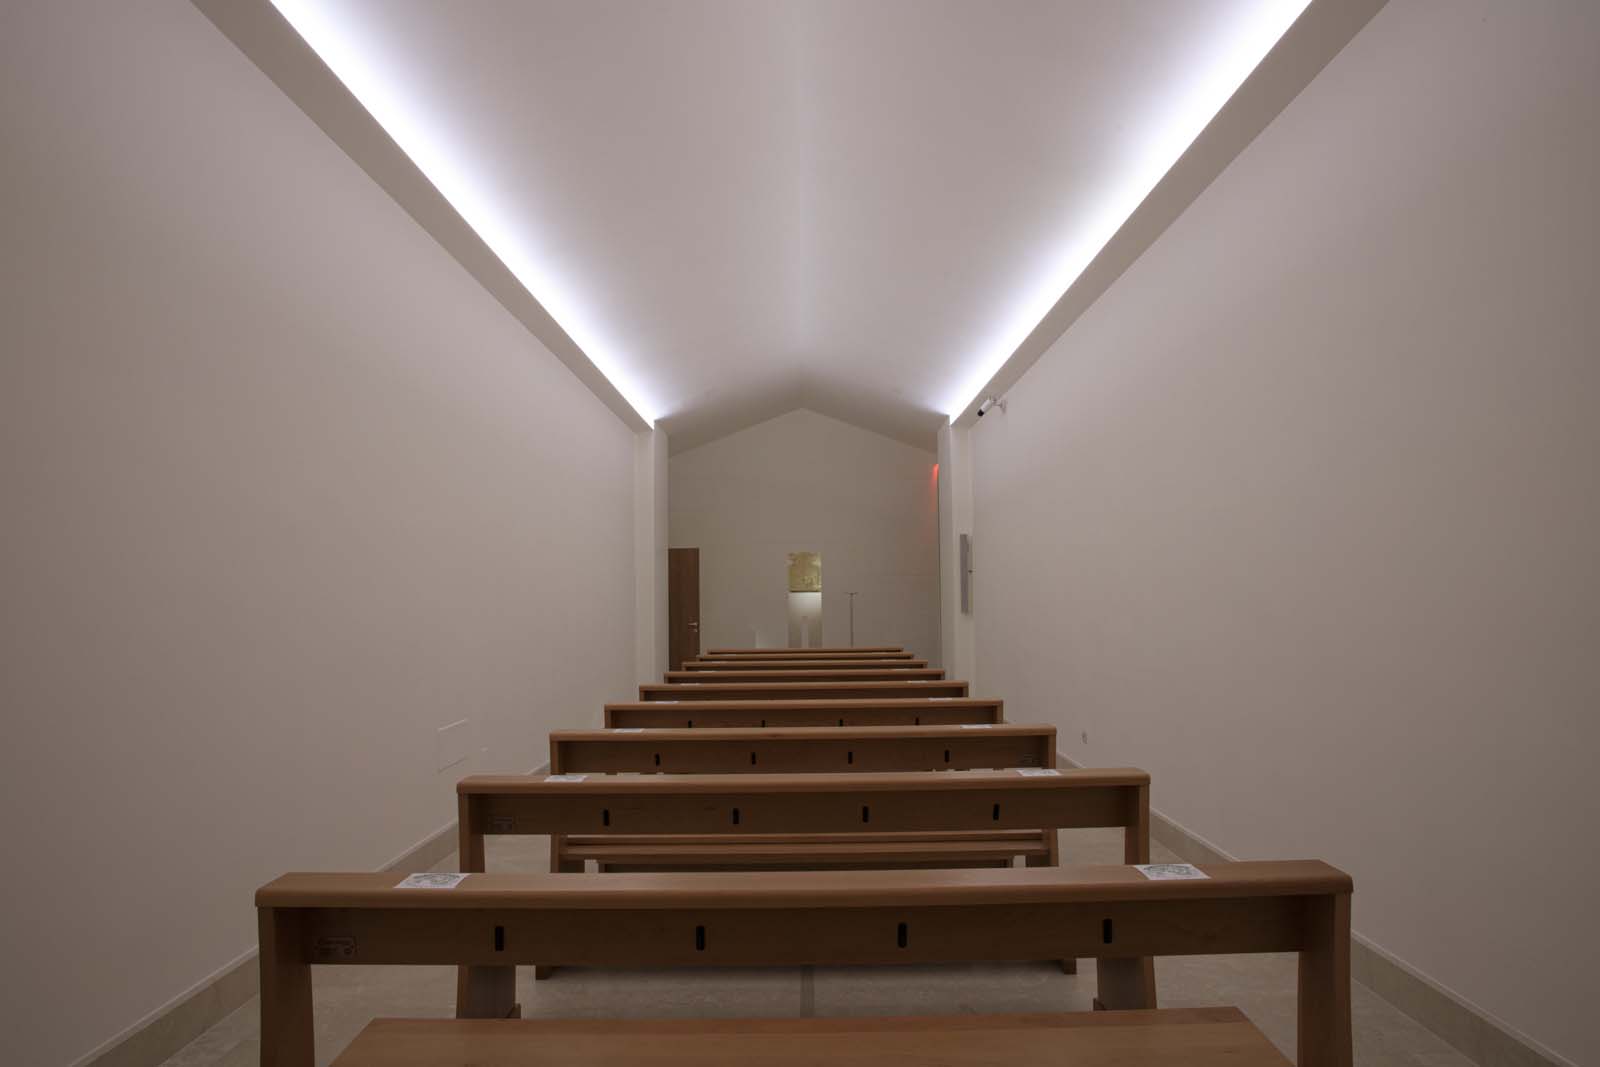 illuminazione a led per chiese